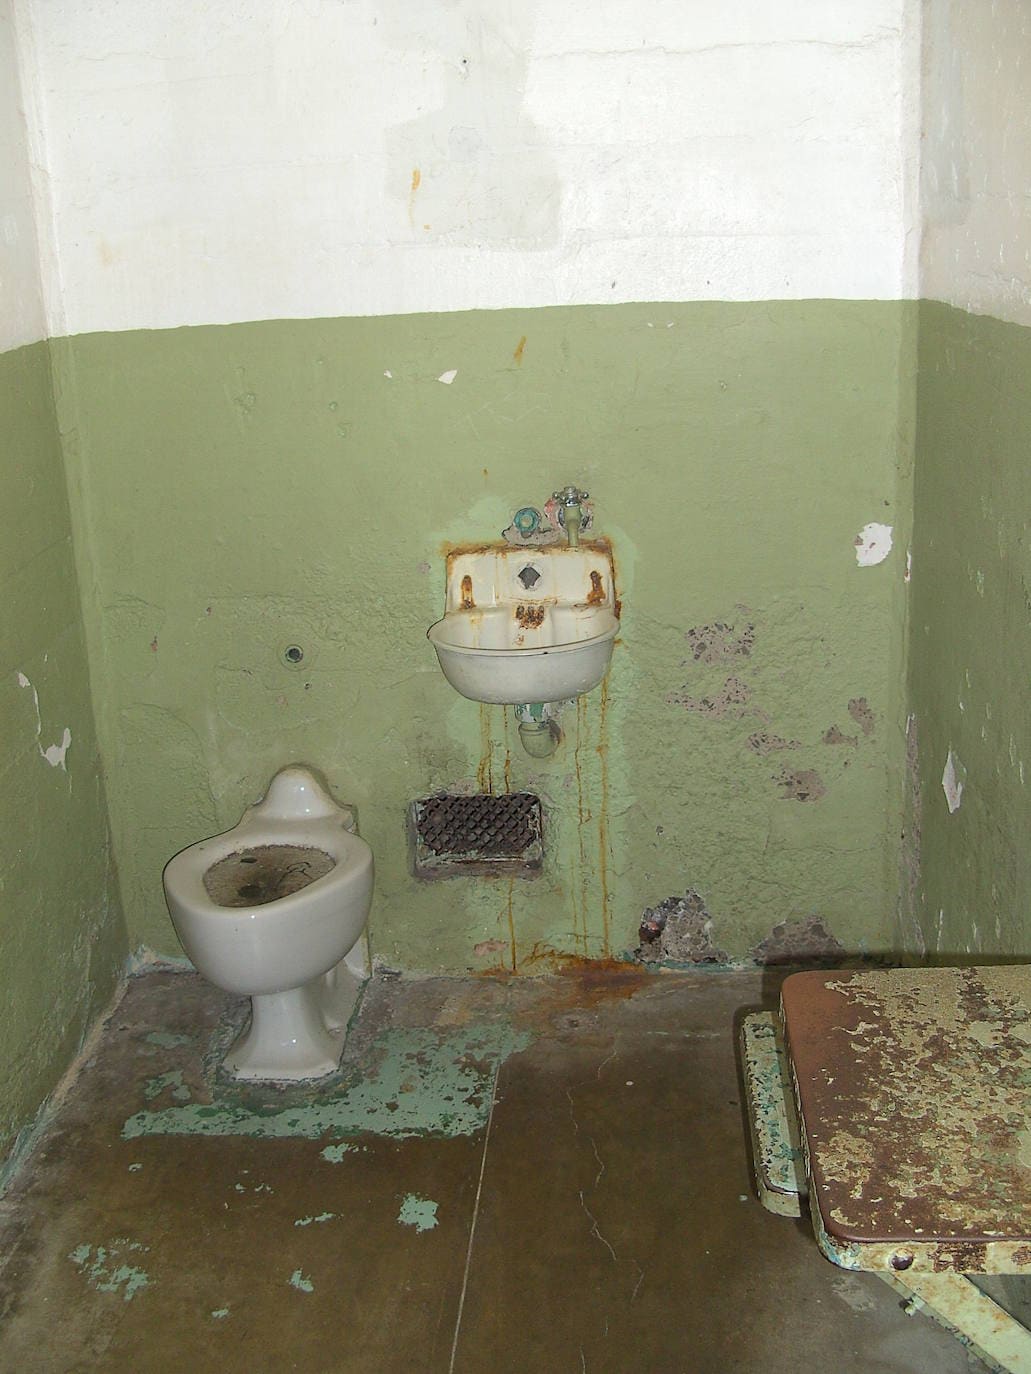 2.- Alcatraz (San Francisco, Estados Unidos) | Alcatraz, isla natural de la bahía de San Francisco es, probablemente, la cárcel más famosa del mundo, aunque solo funcionara como tal durante 29 años (de 1934 a 1963). Alcatraz fue una superprisión, un experimento penitenciario ante el incremento de los crímenes en Estados Unidos tras la Gran Depresión de la década de 1930. En 'La Roca', como también era conocida, estuvieron algunos de los mafiosos más conocidos de la época, como Al Capone o Robert Birdman Stroud.